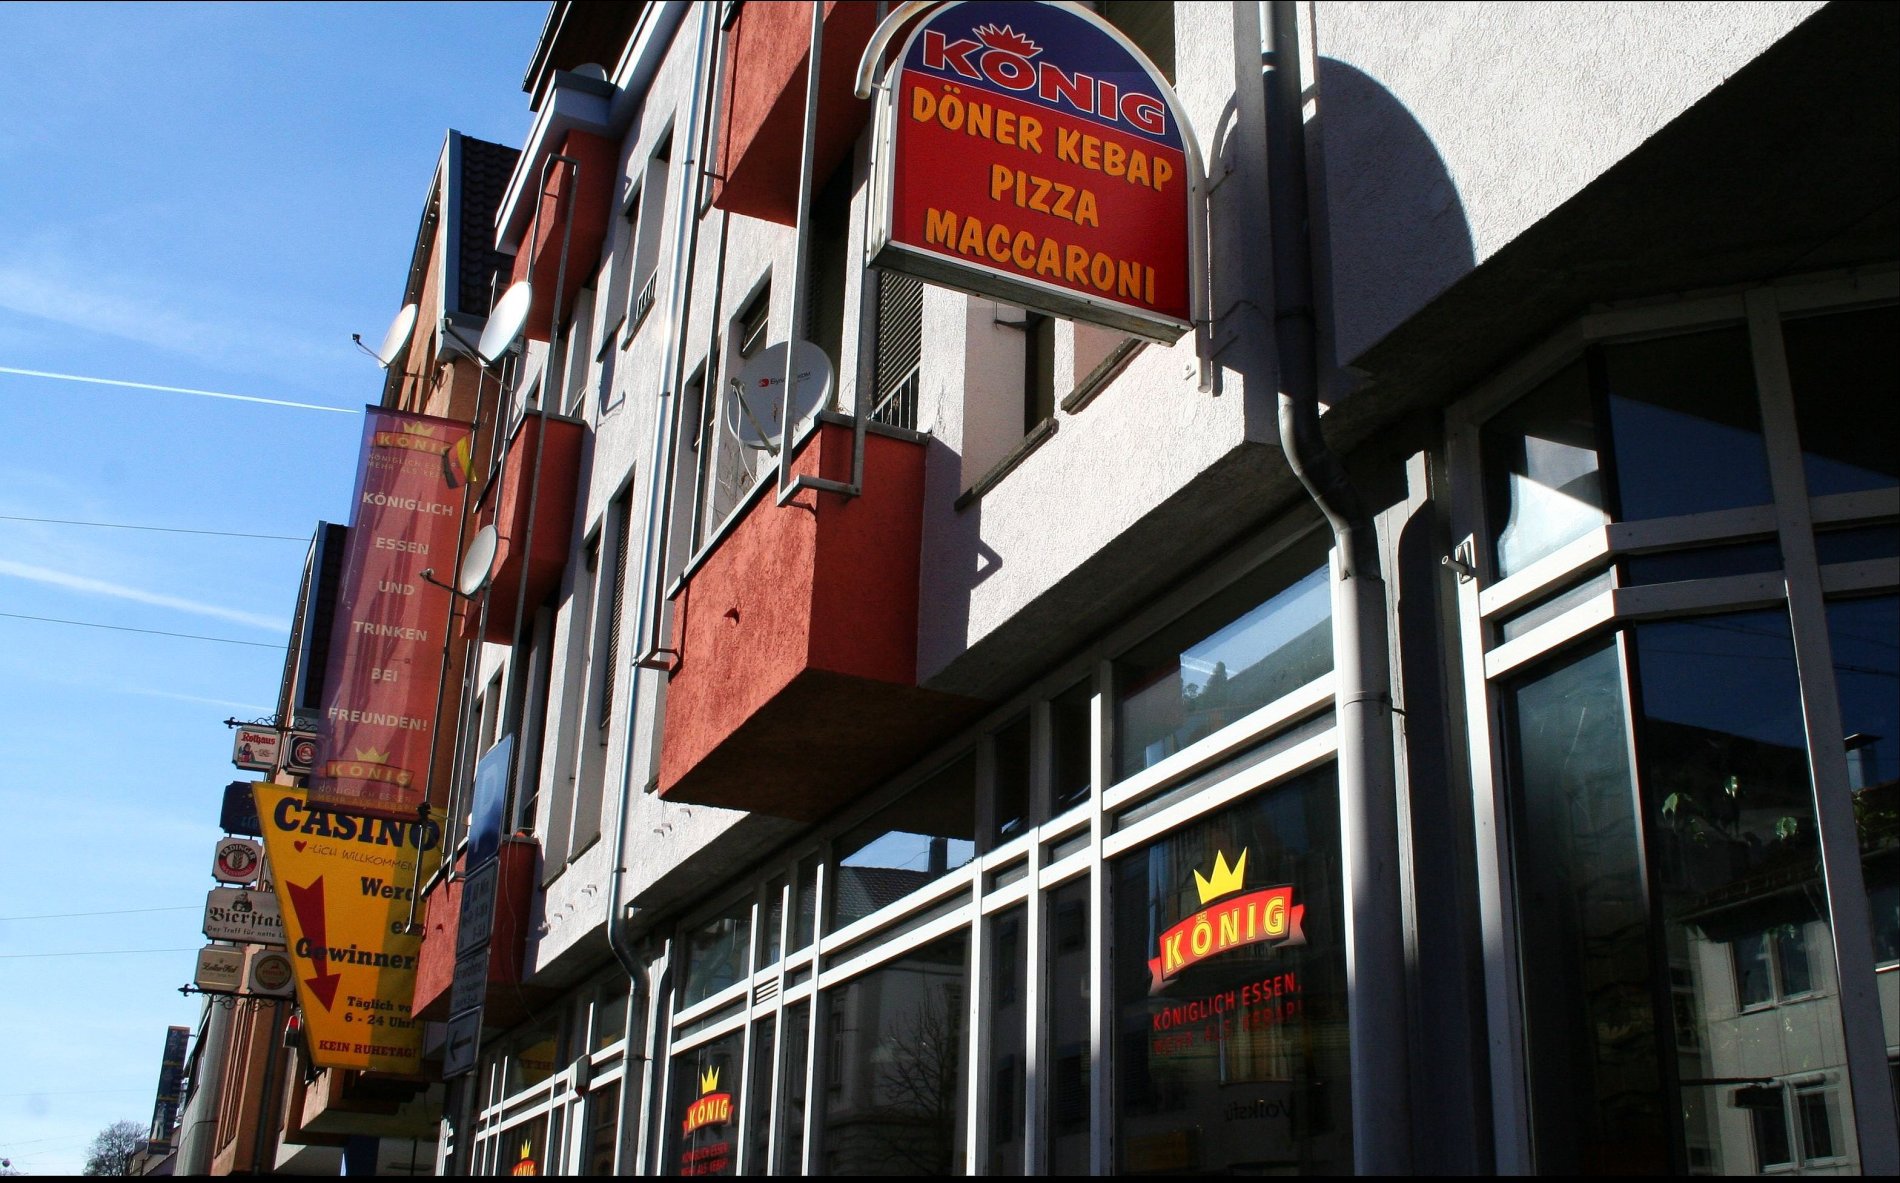 Restaurants in Albstadt: Kebab-Pizza König Geschäftsfront in Albstadt-Ebingen